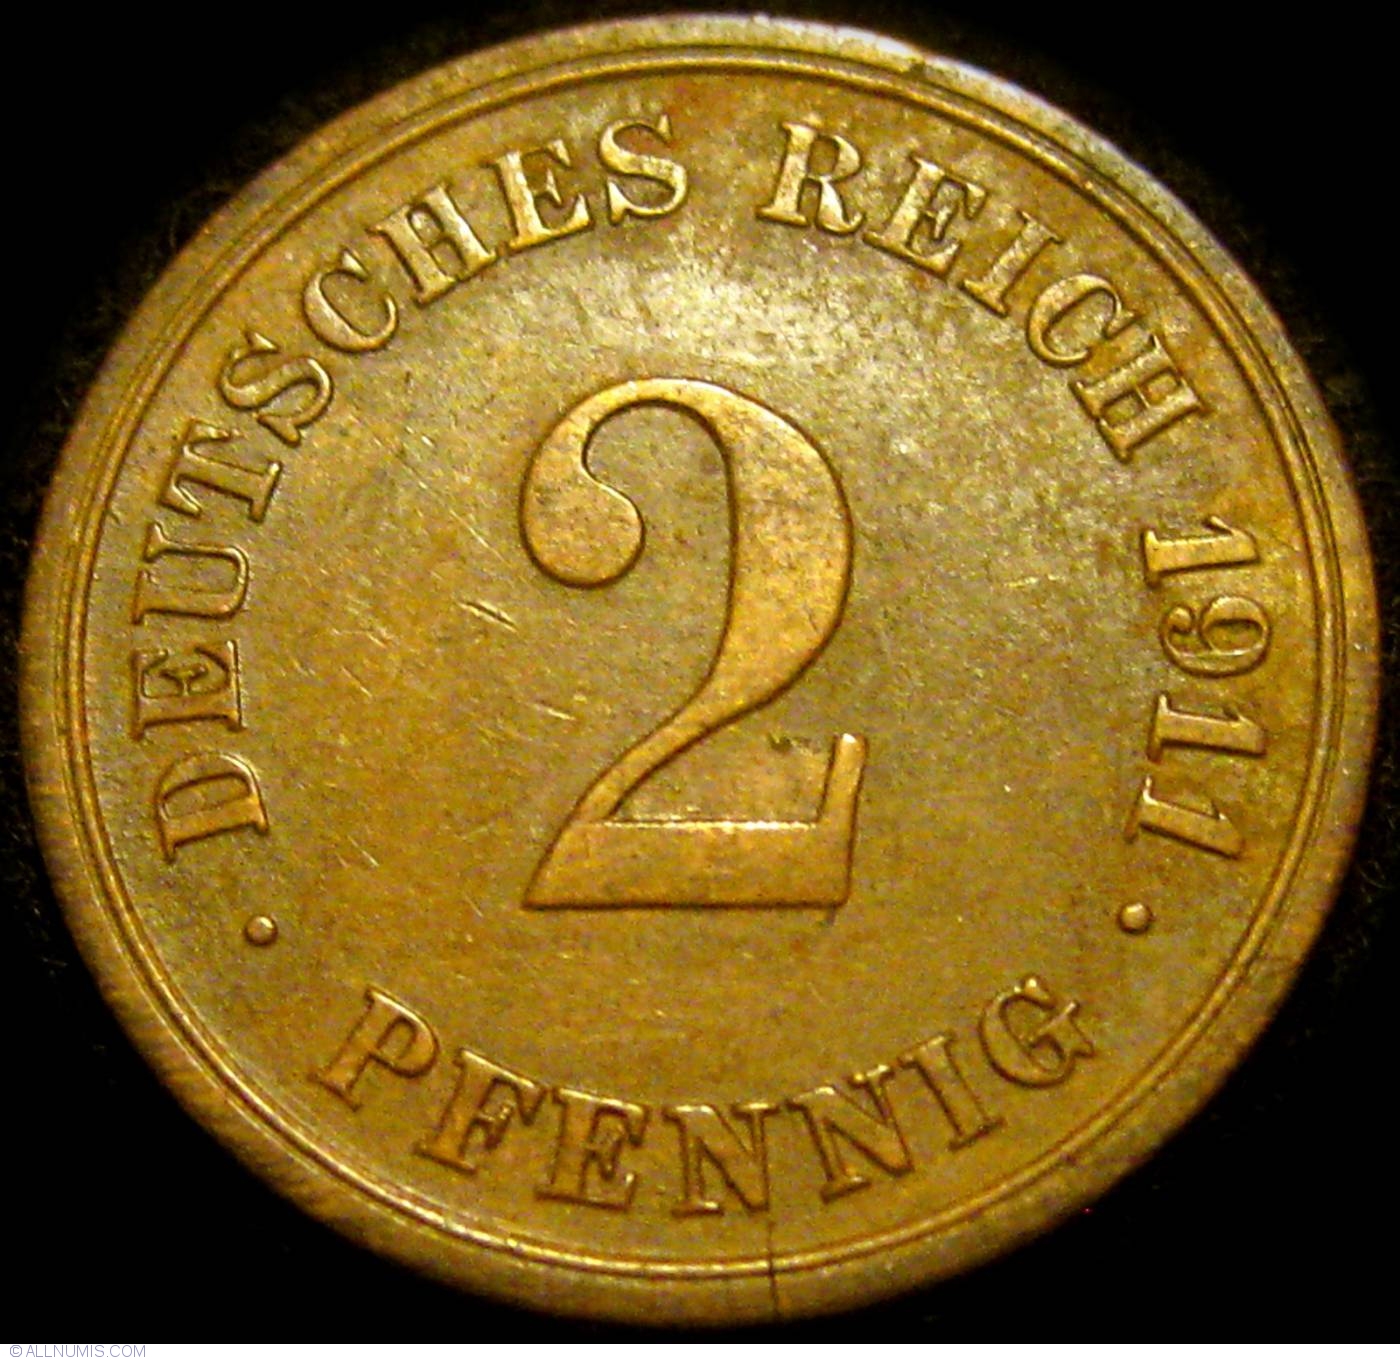 2 Pfennig 1911 G, Wilhelm II (1888-1918) - Germany - Coin - 23421